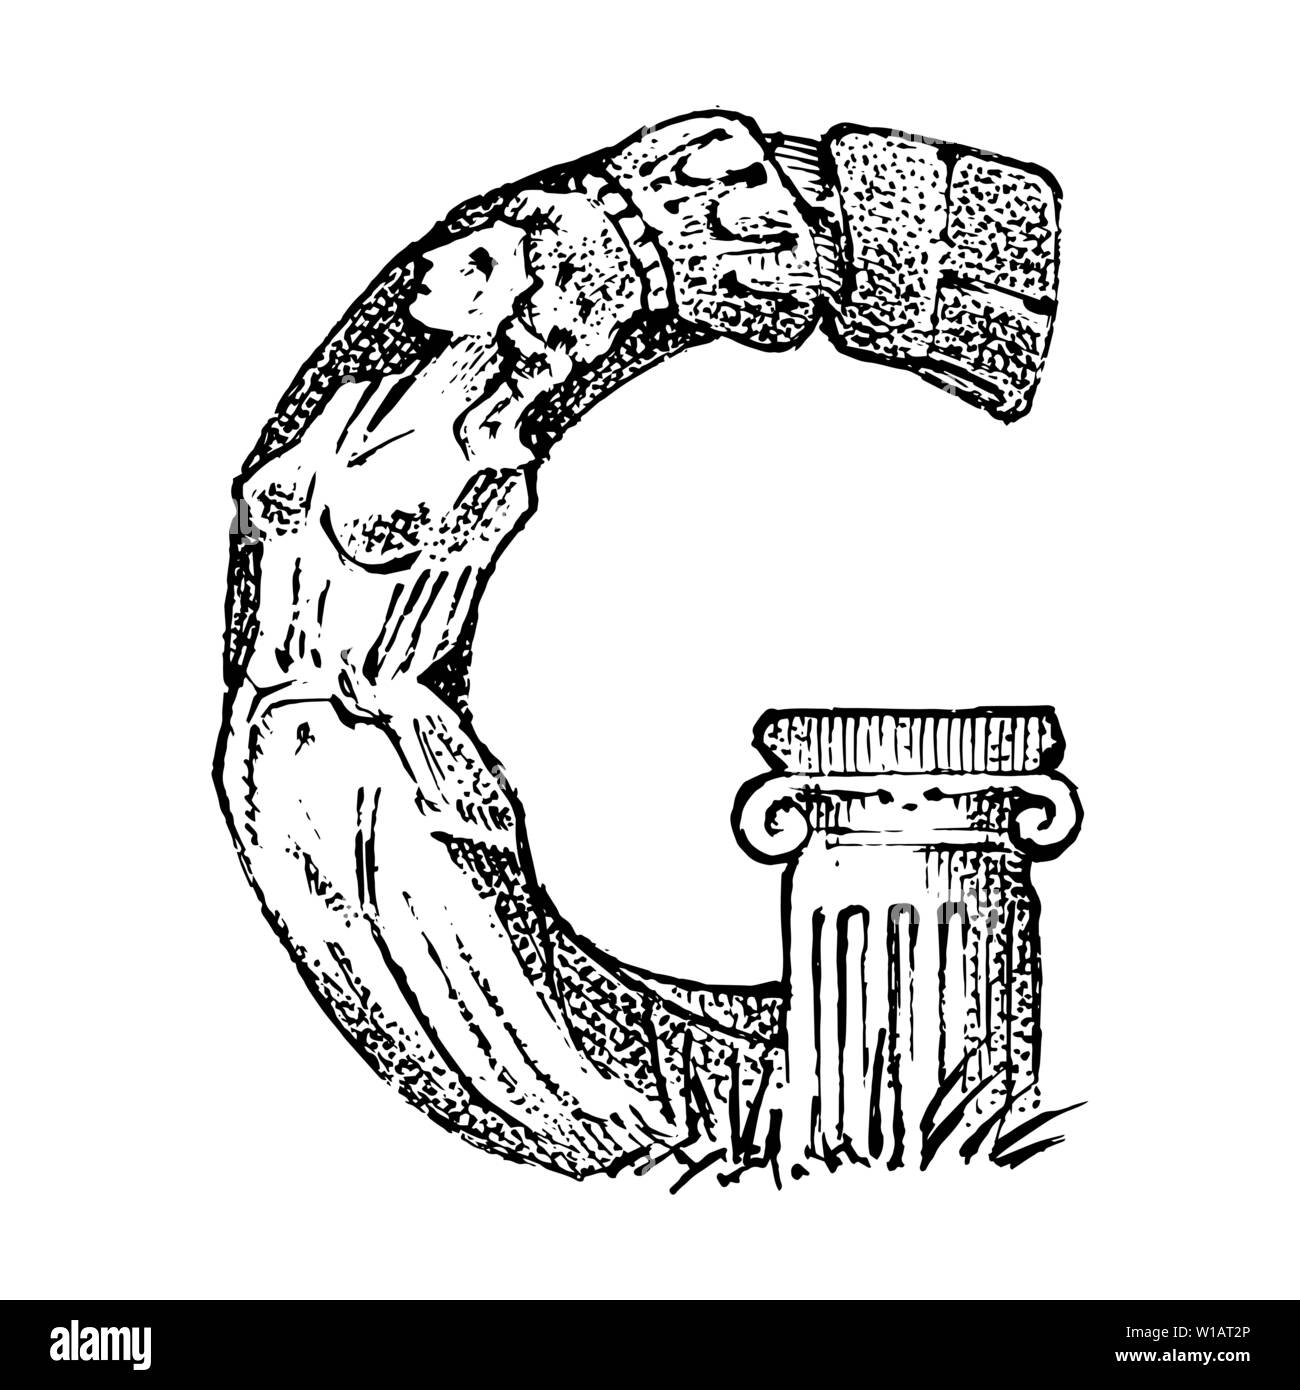 Antigua Antigua capital letra G con ornamento. La cultura griega. Doble exposición. Sketch grabado dibujado a mano en estilo vintage. Ilustración del Vector